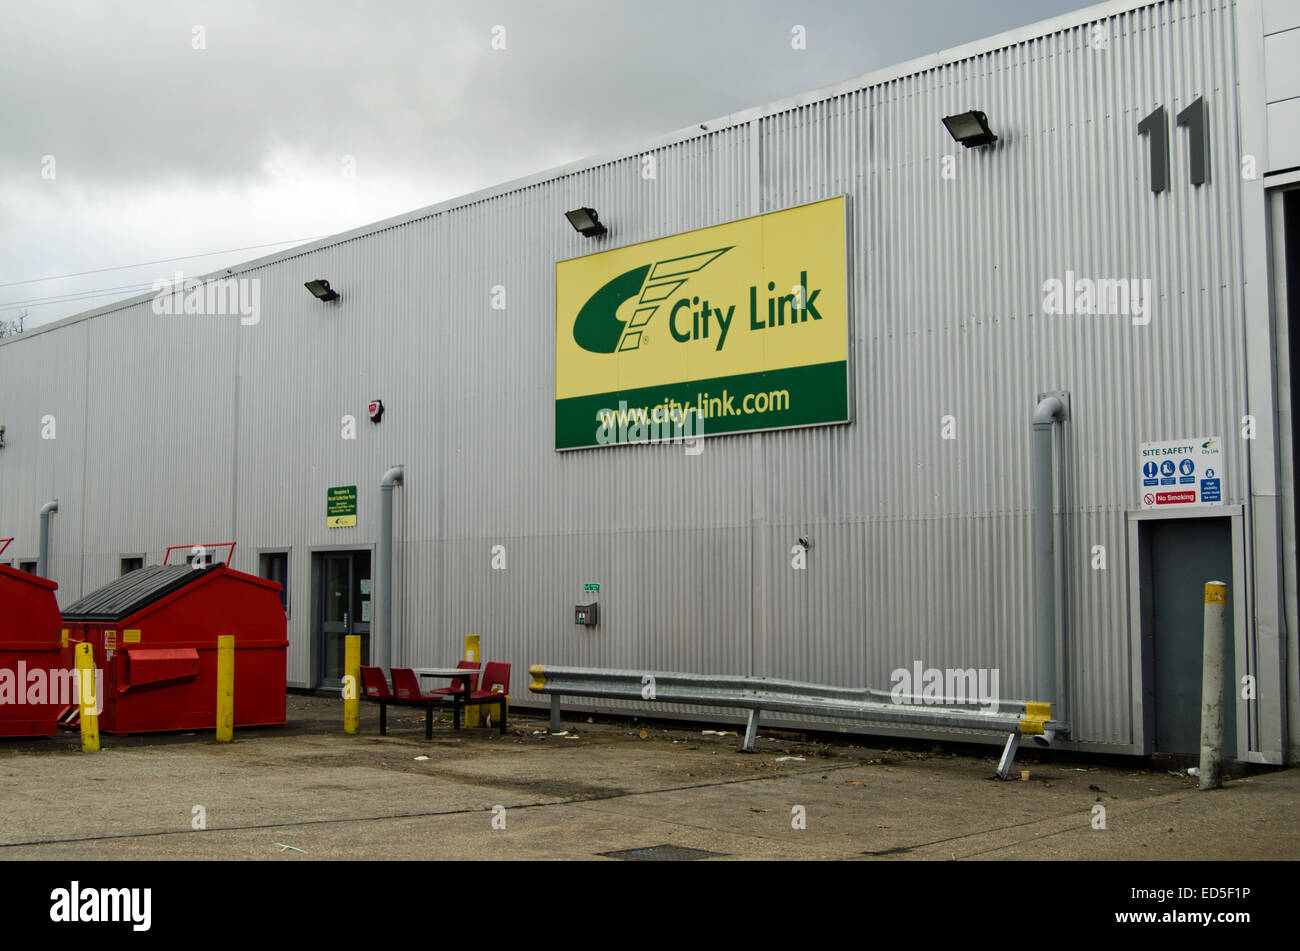 BASINGSTOKE, Royaume-Uni - 27 décembre 2014 : dépôt de la livraison de colis de Basingstoke Entreprise Ville Lien après mise sous séquestre. Banque D'Images